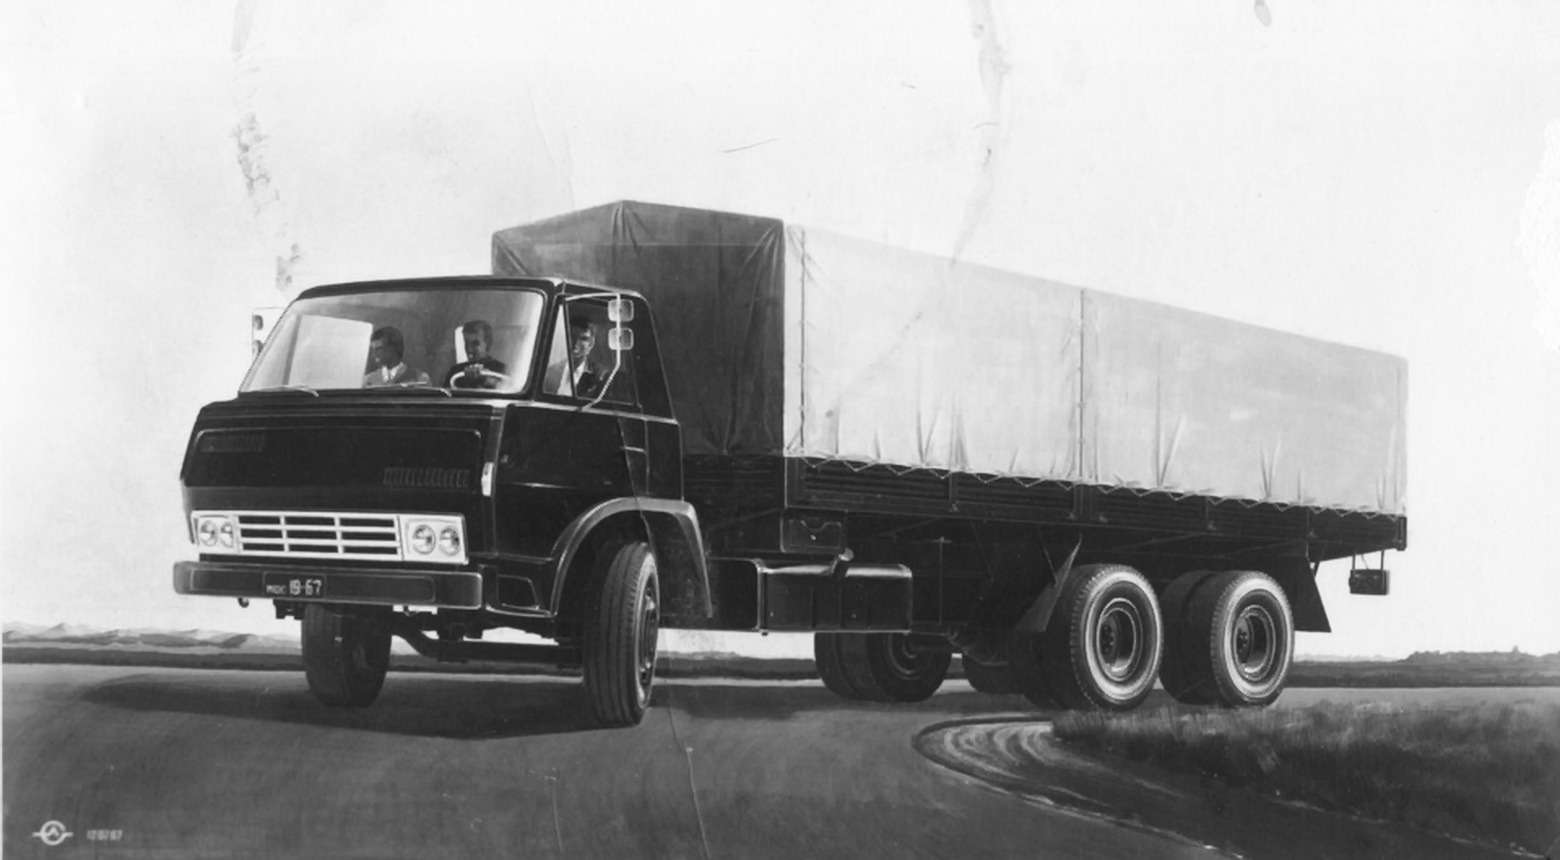 Эскиз грузовика ЗиЛ-170 Льва Самохина, 1969 г. Взято с сайта rusautomobile.livejournal.com